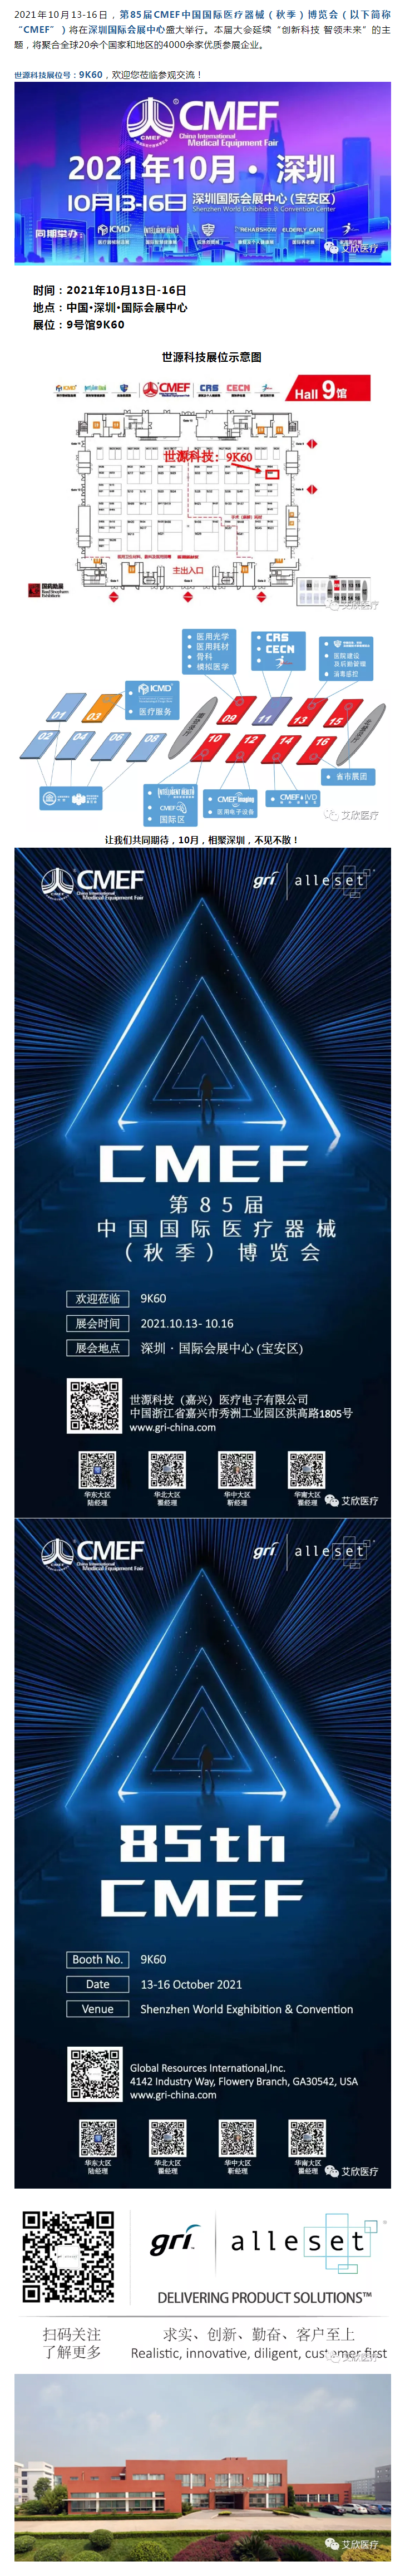 第85屆CMEF秋季博覽會 _ 金秋十月 世源科技與您相約深圳 (展位號_9K60).png